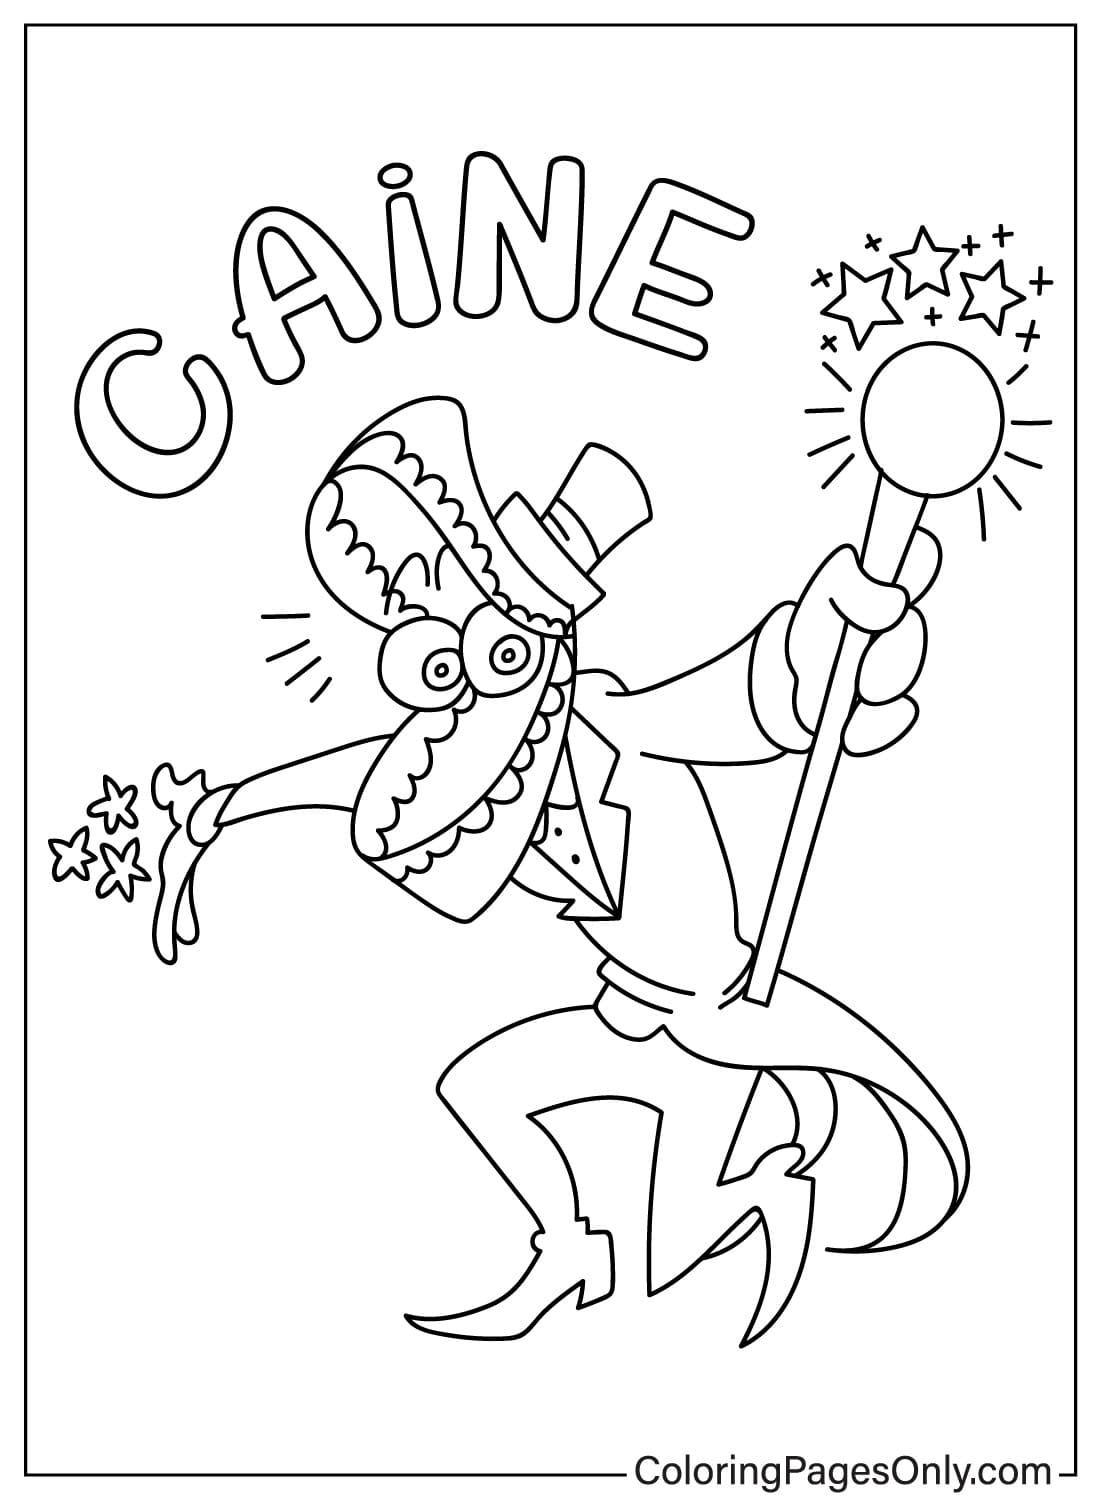 Caine Gratis printbare kleurplaat van Caine